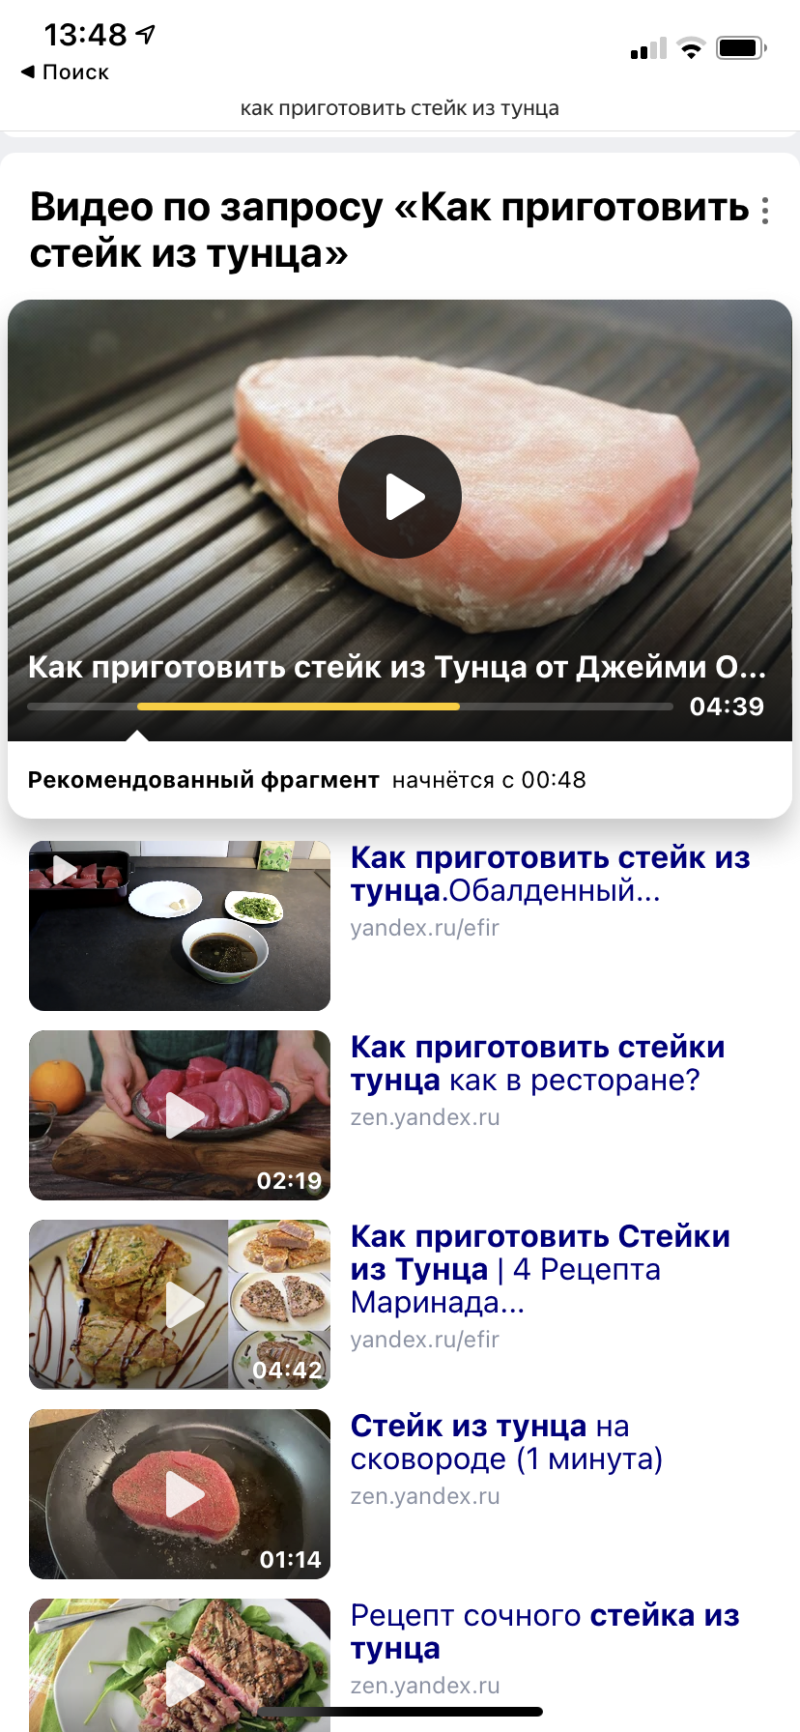 Поиск нужного фрагмента видео в Яндексе